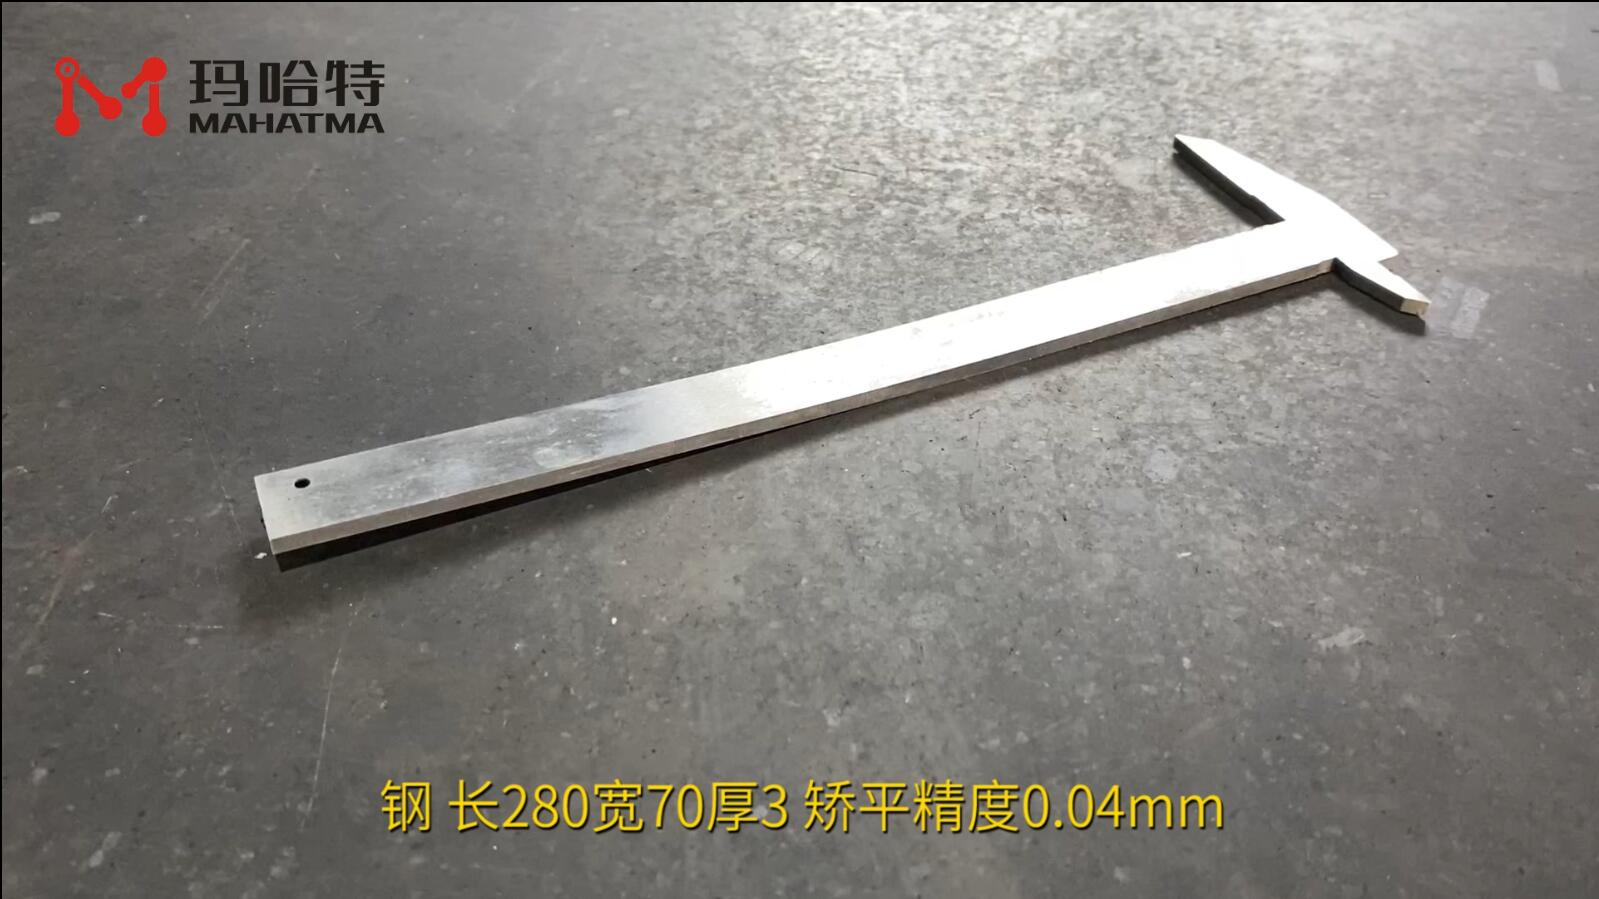 钢 MHT50-1300 异形 长280宽70厚3 矫平精度0.04mm